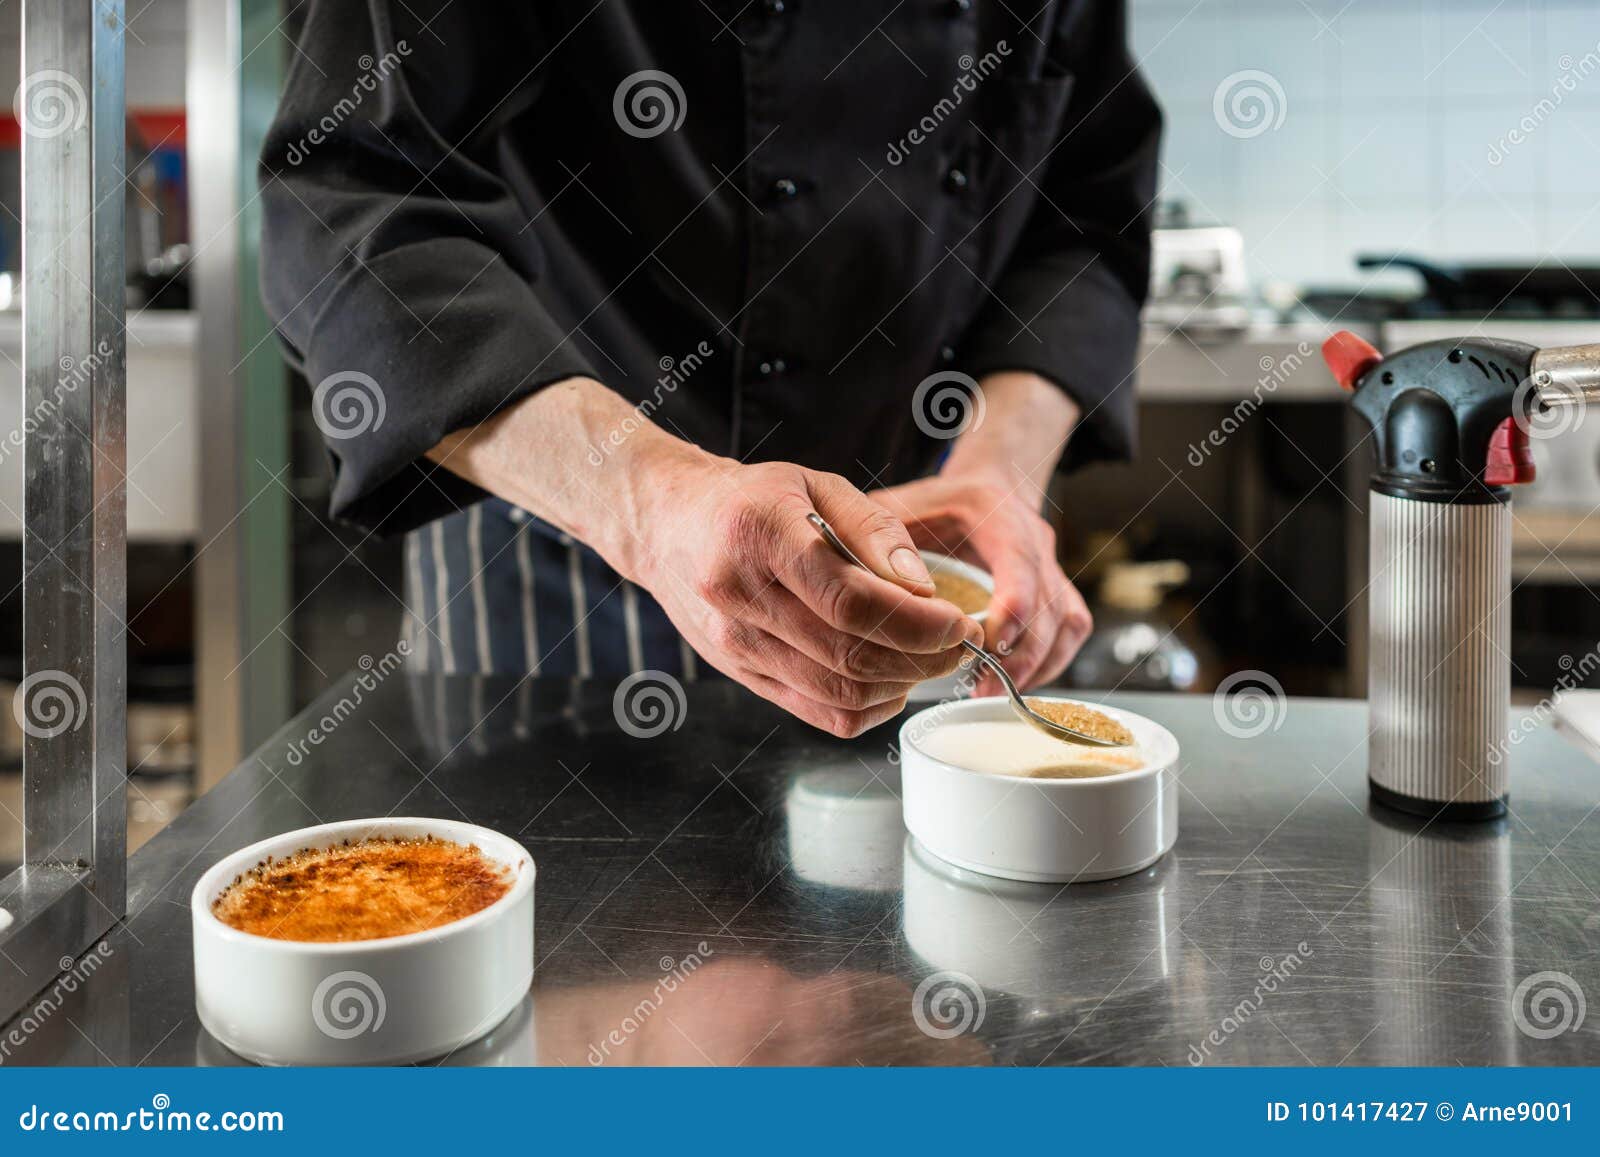 chef or patissier preparing dessert